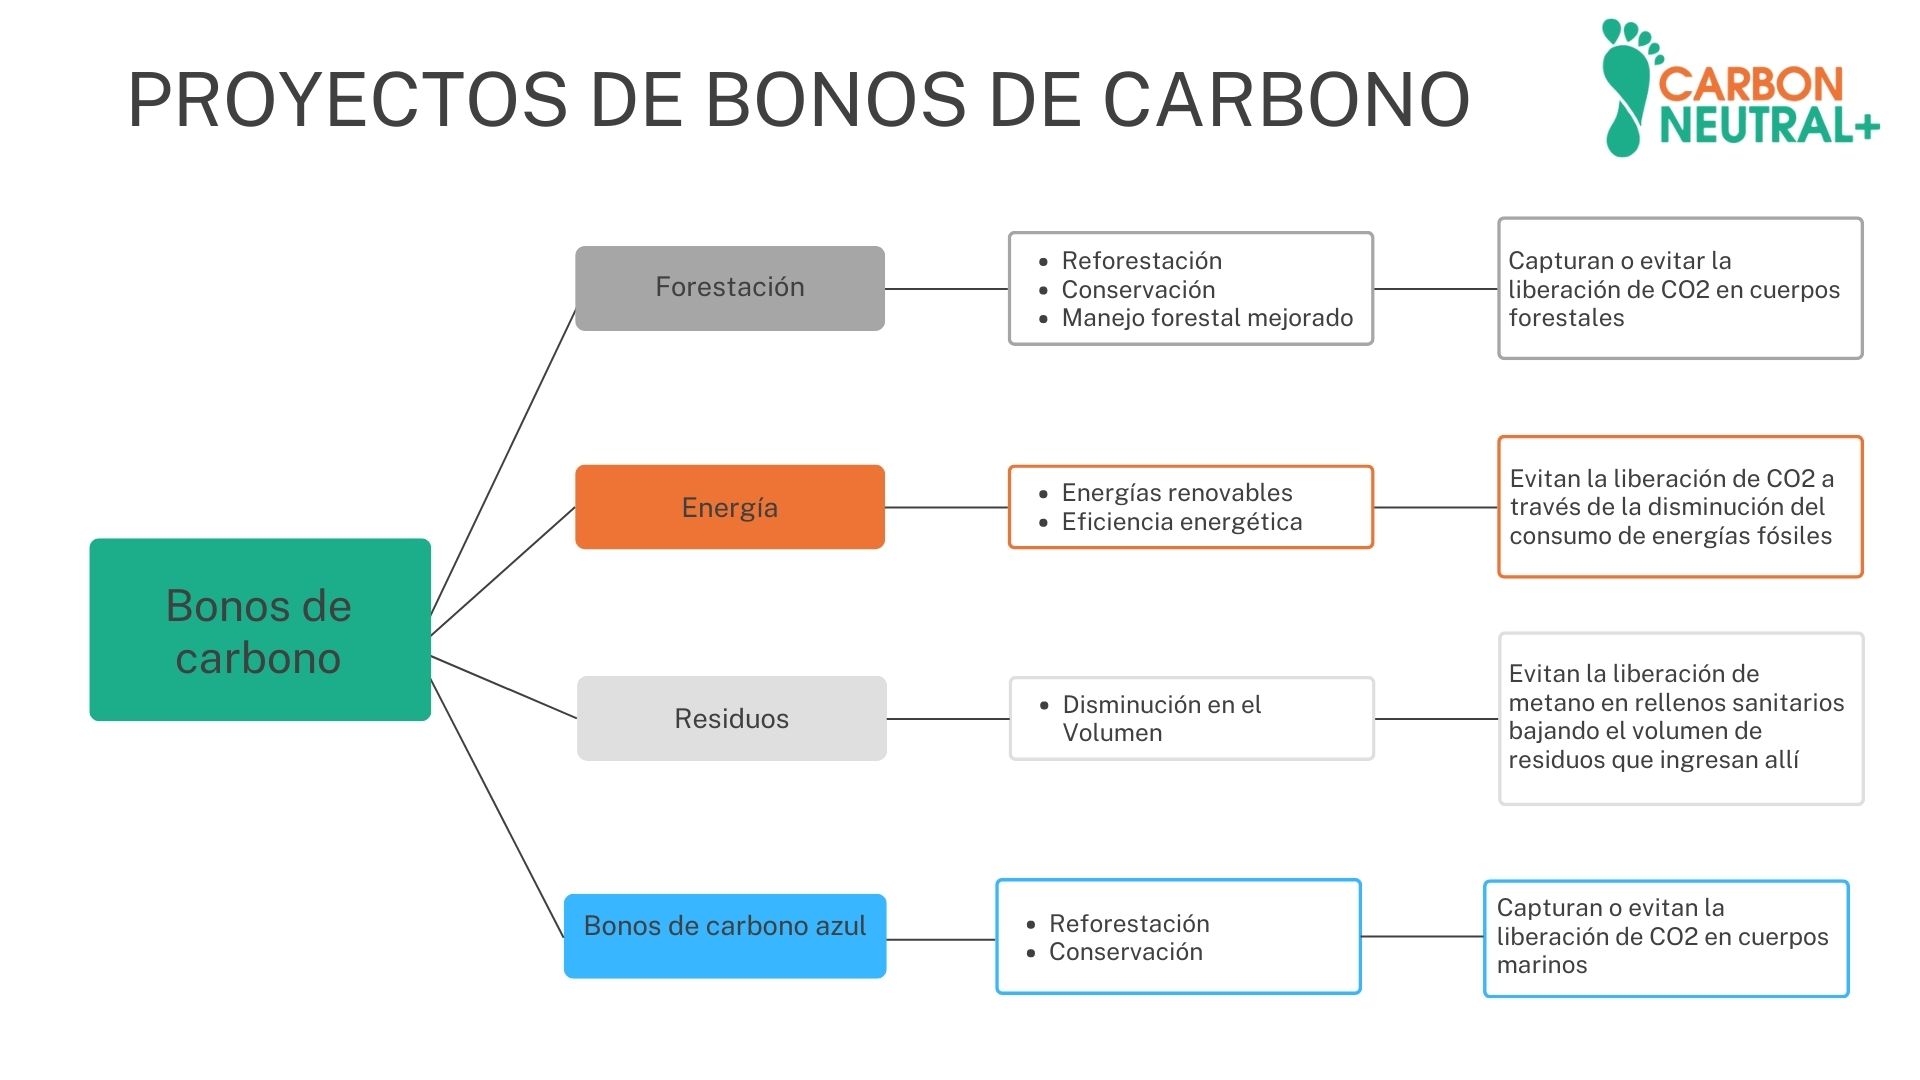 Proyectos de bonos de carbono